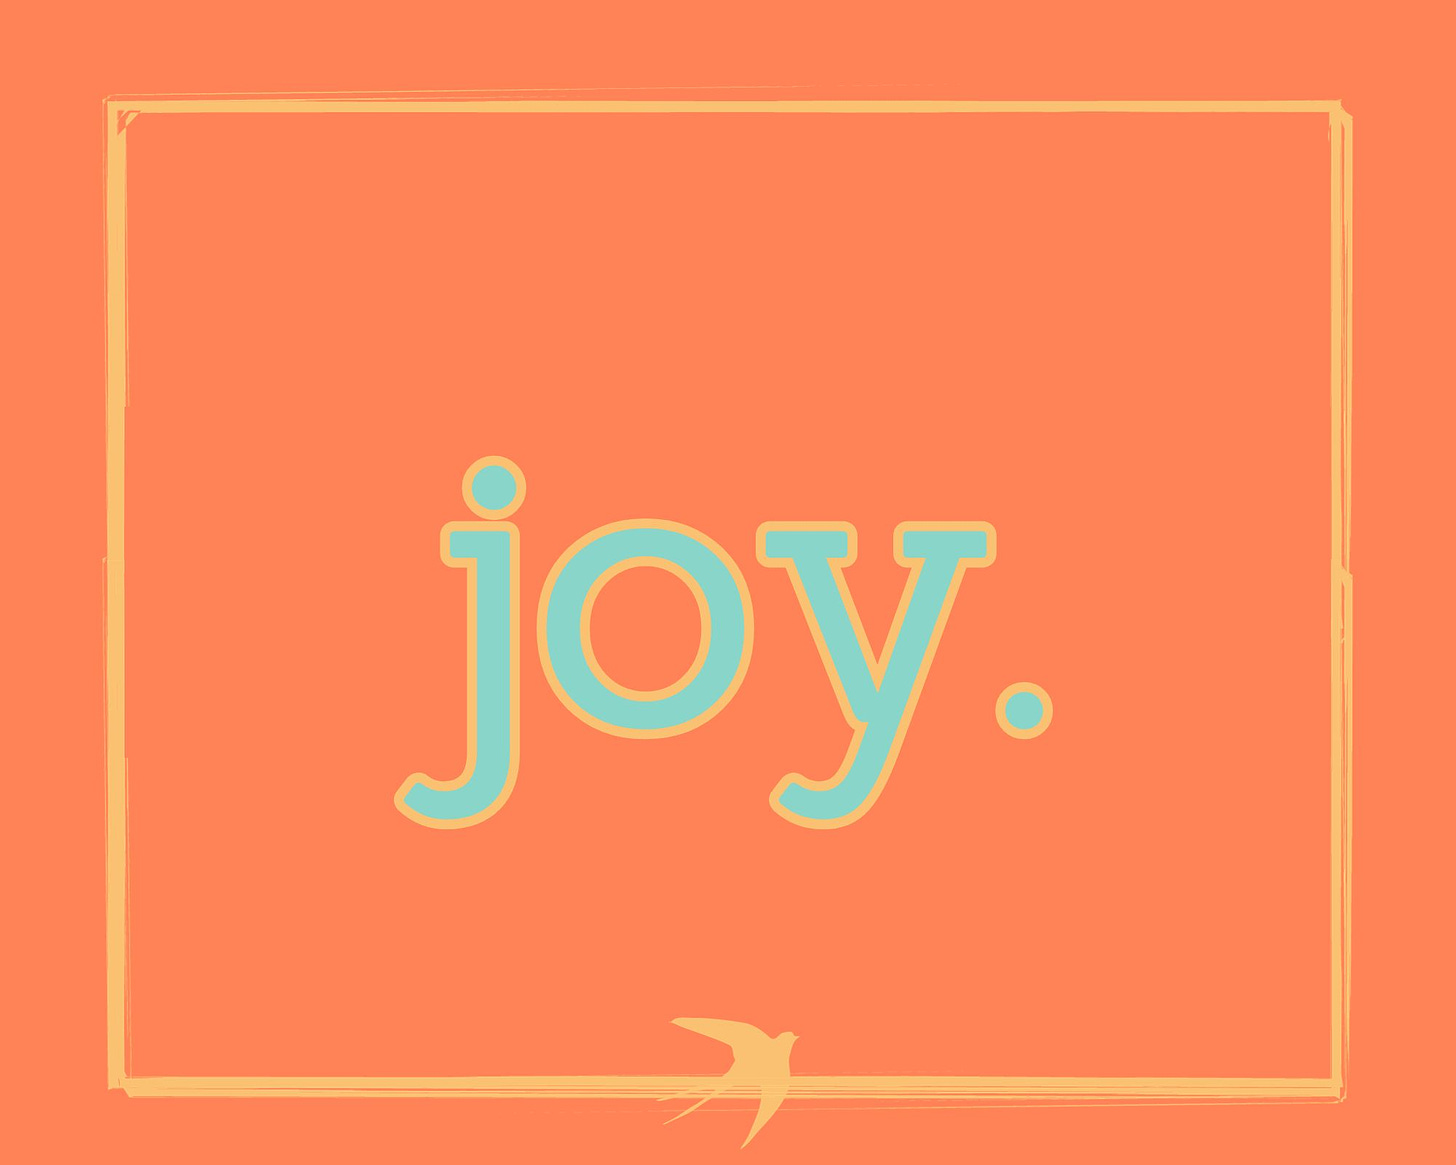 "joy" in mint green letters on an orange background